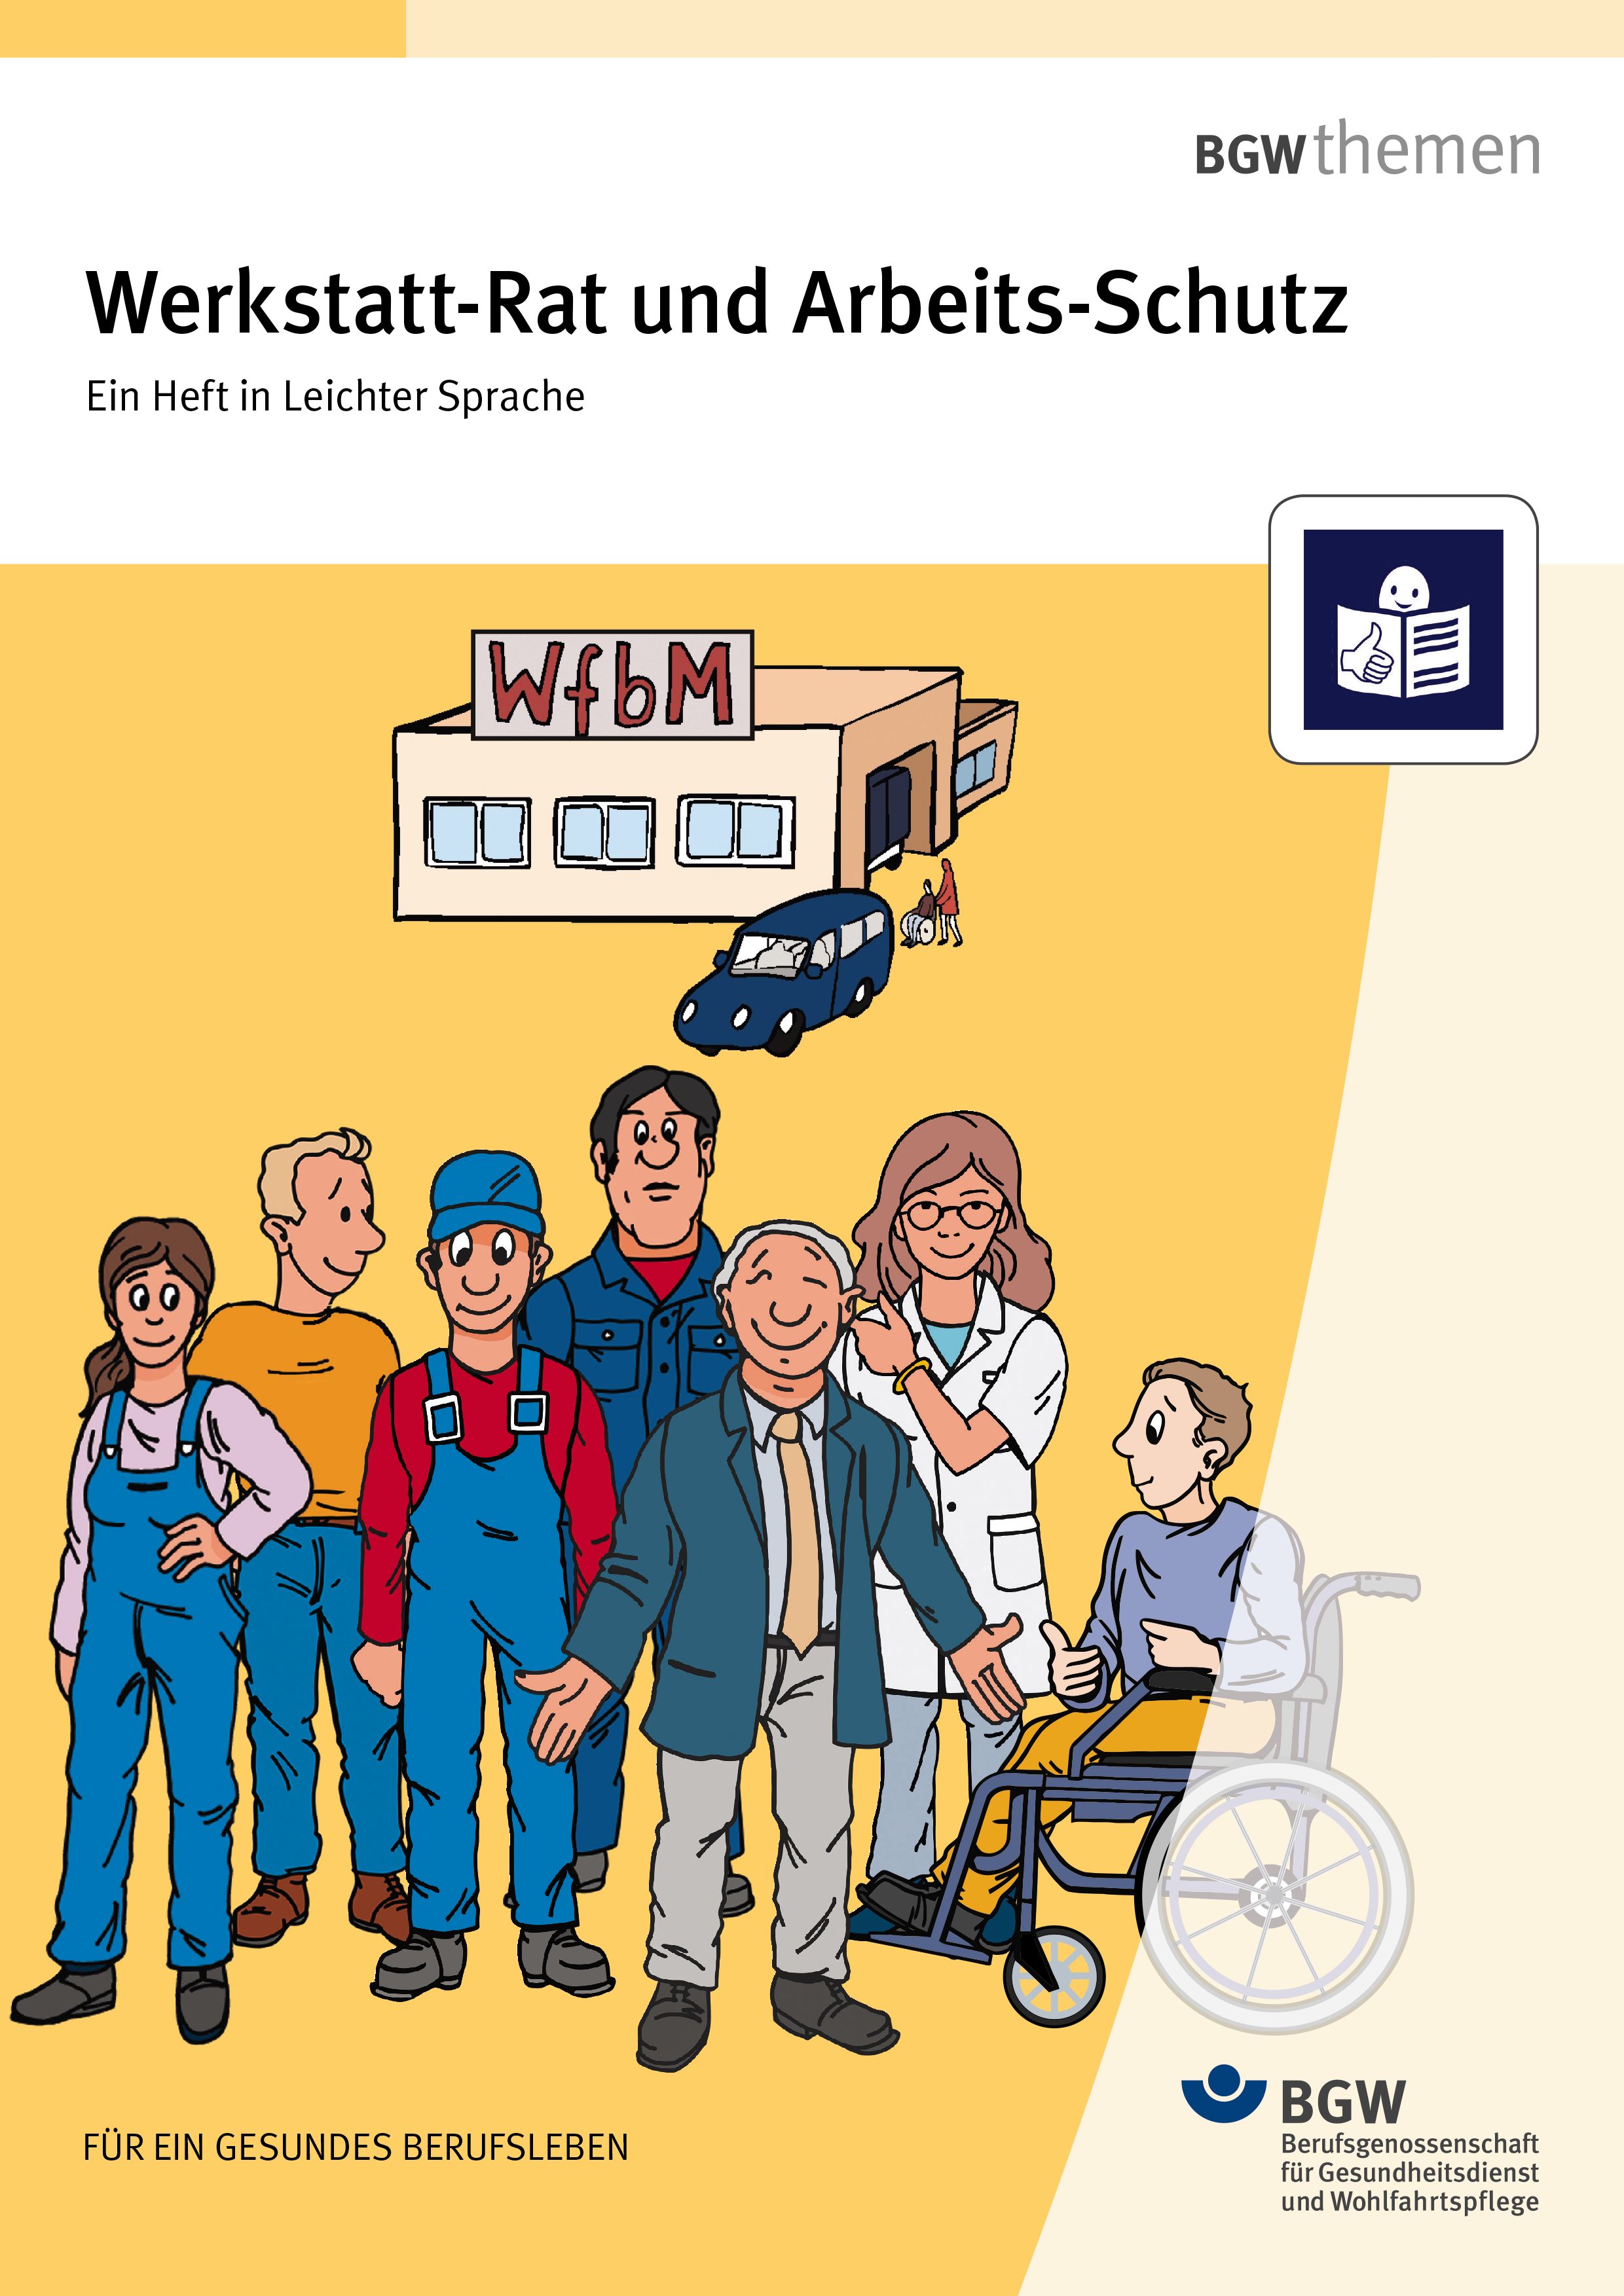 Titel: Werkstatt-Rat und Arbeits-Schutz – Ein Heft in Leichter Sprache - Illustration: verschiedene Personen vor einer Werkstatt für Menschen mit Behinderung